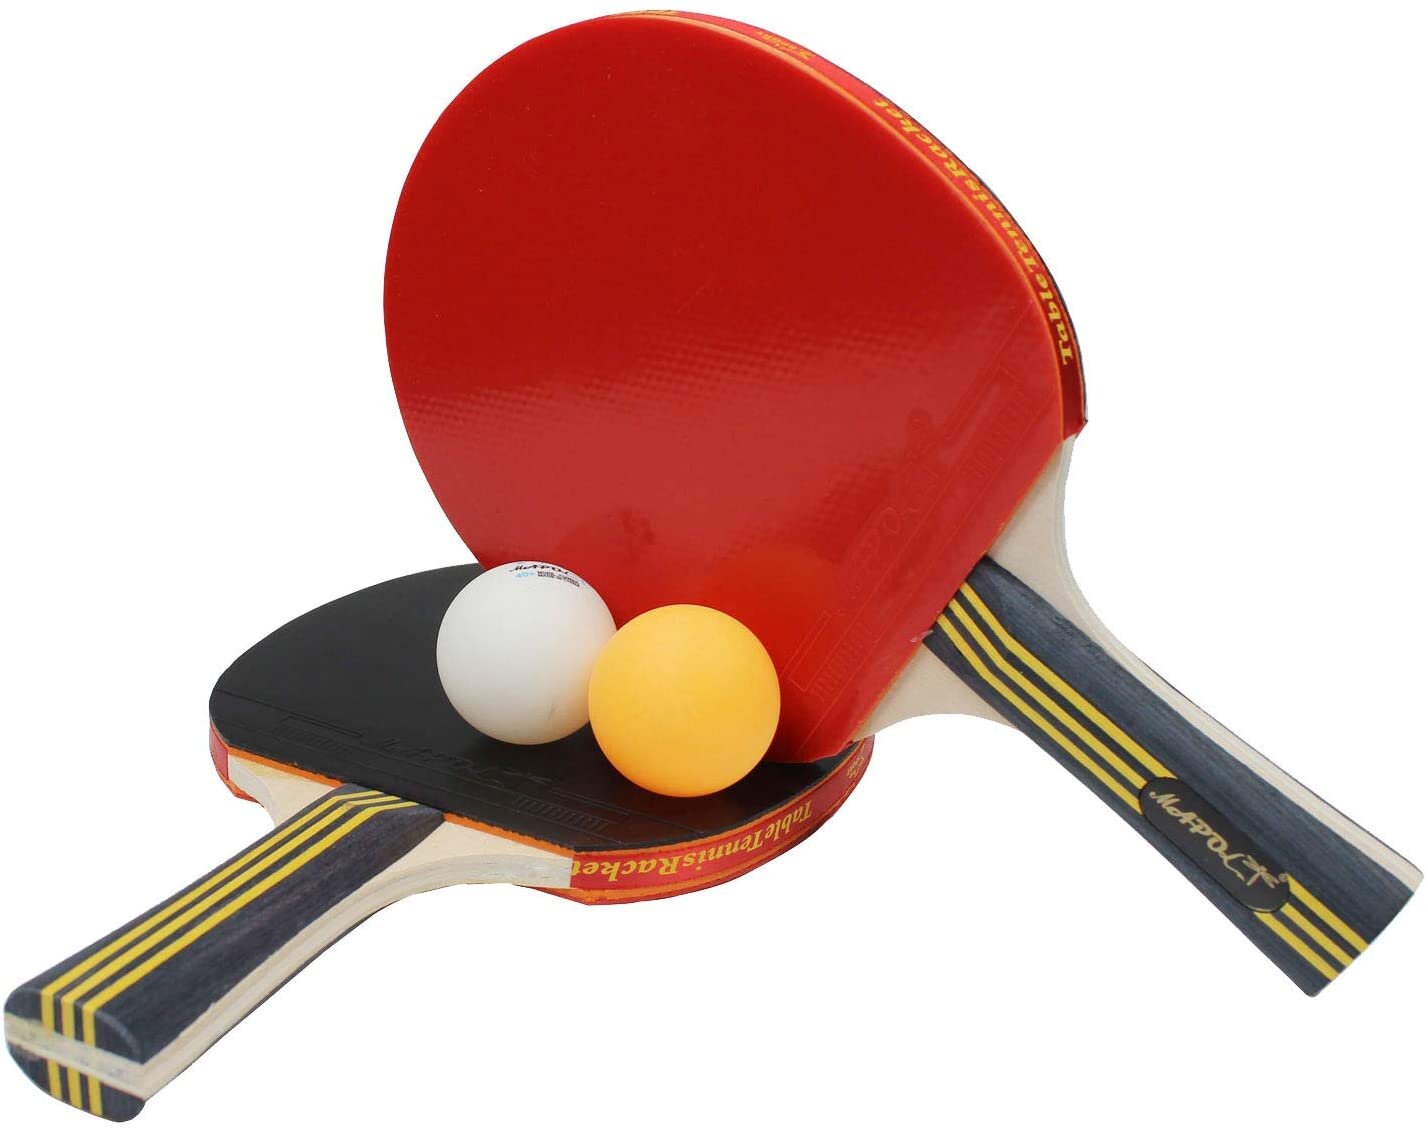 Можно ли в настольном теннисе отбивать шарик до касания стола